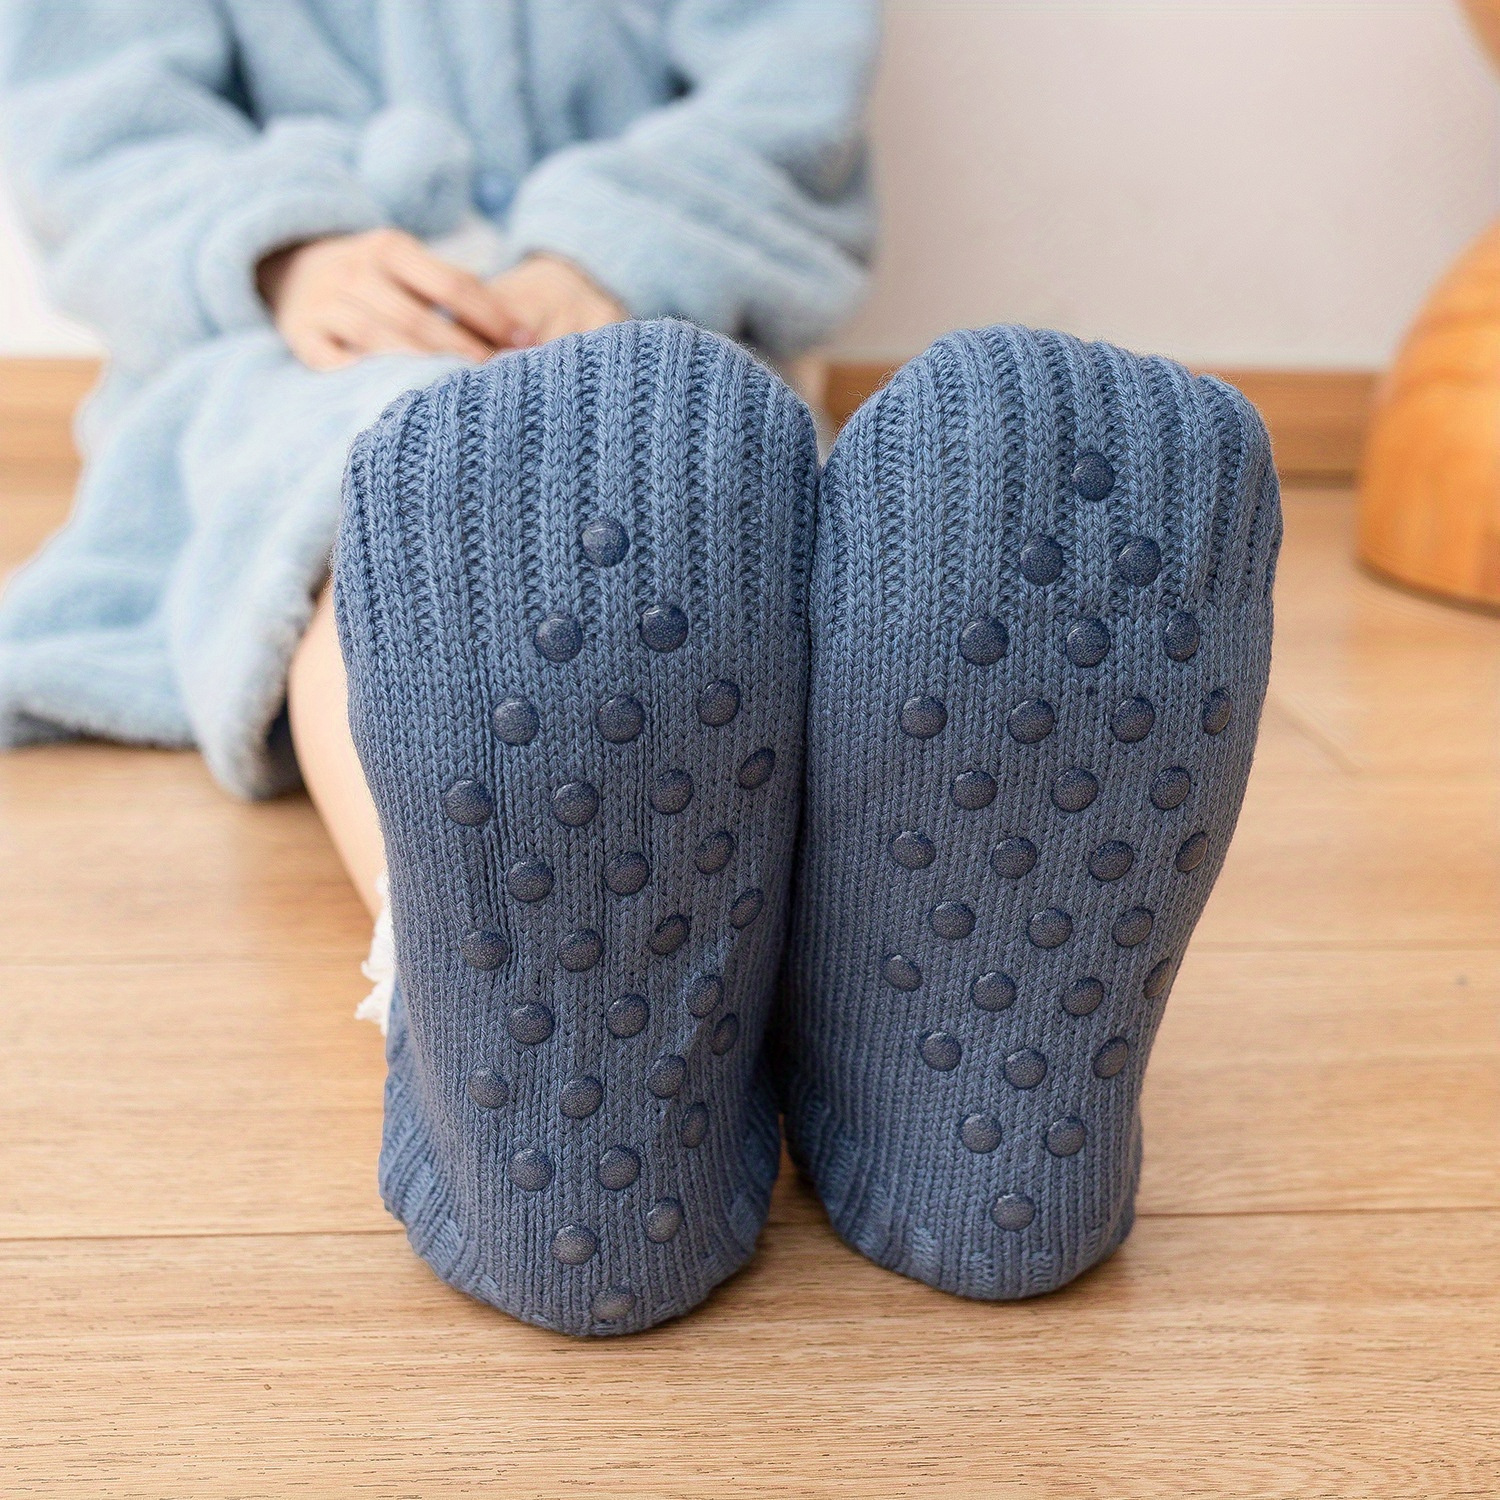 Comprar Calcetines térmicos cálidos calcetines antideslizantes gruesos  calcetines de lana de invierno otoño hombres niño